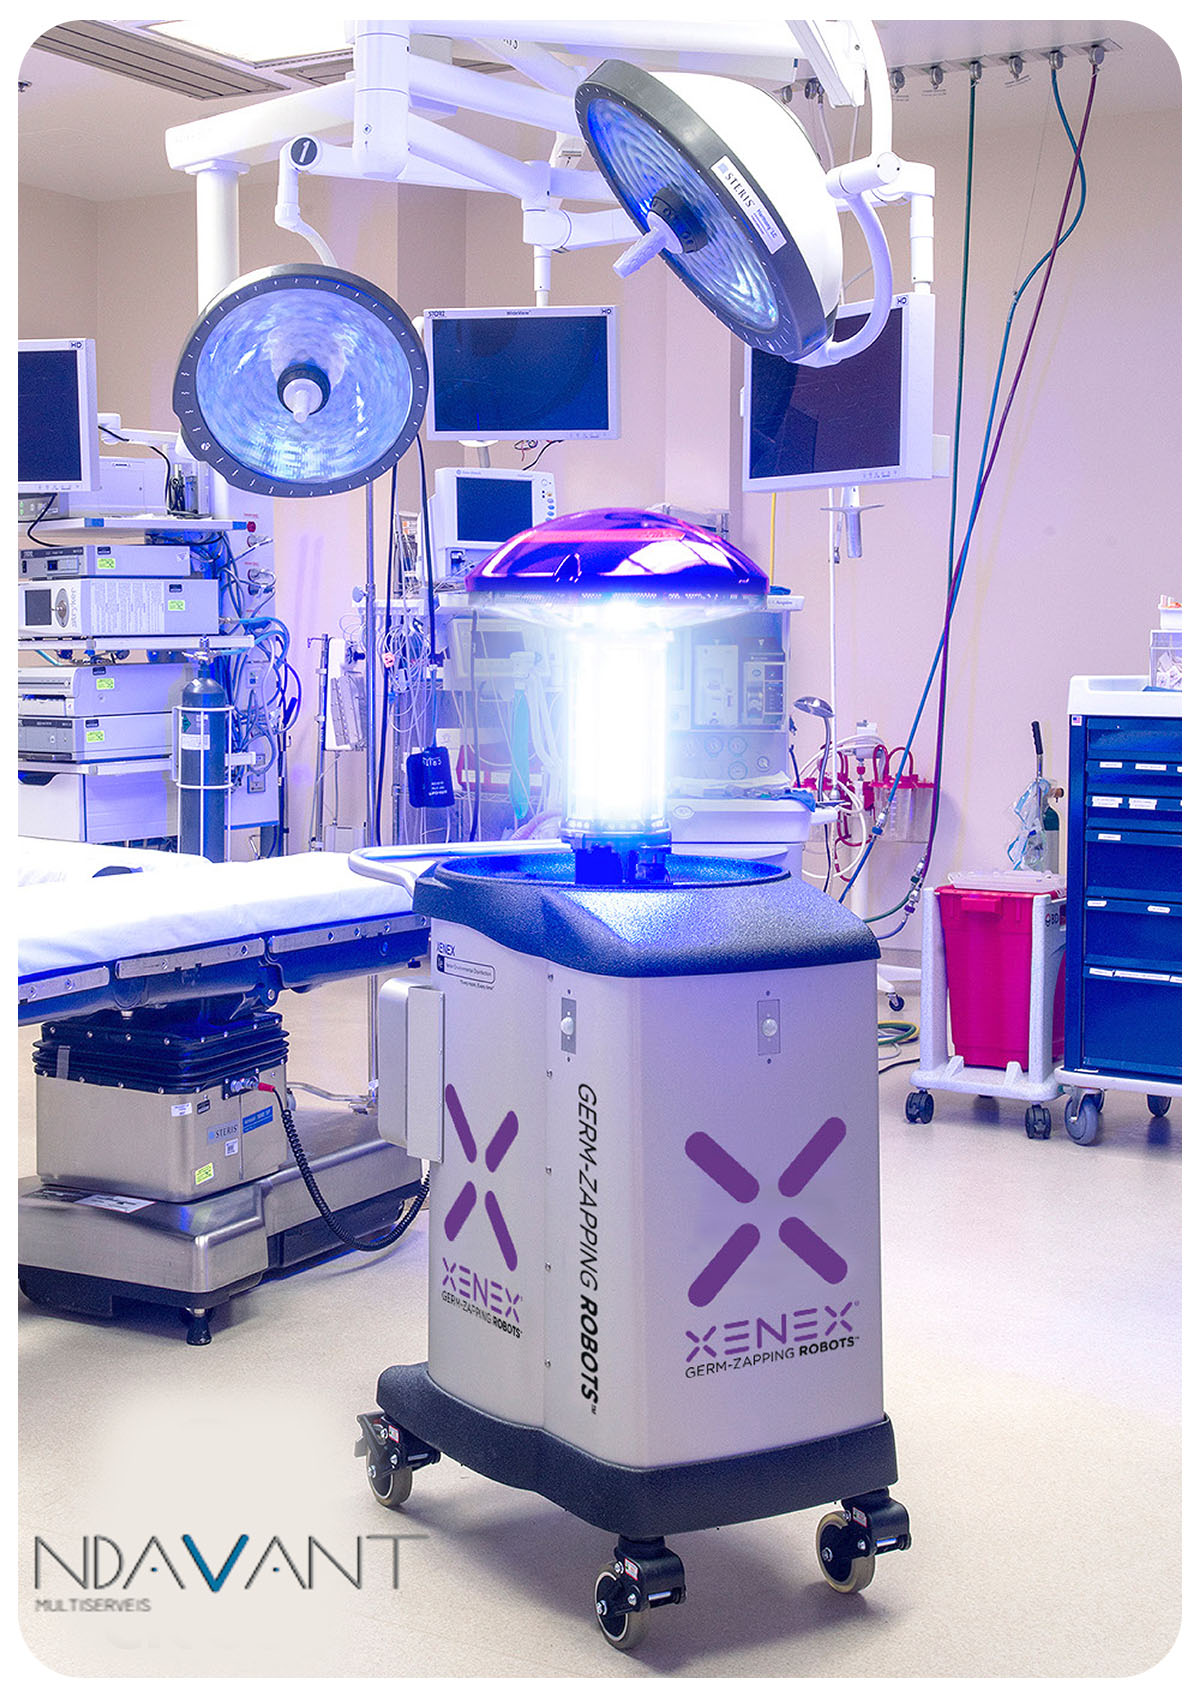 Xenex, robot de desinfecció per llum ultraviolada tipus C, amb alta eficàcia en l'eliminació de microorganismes patògens